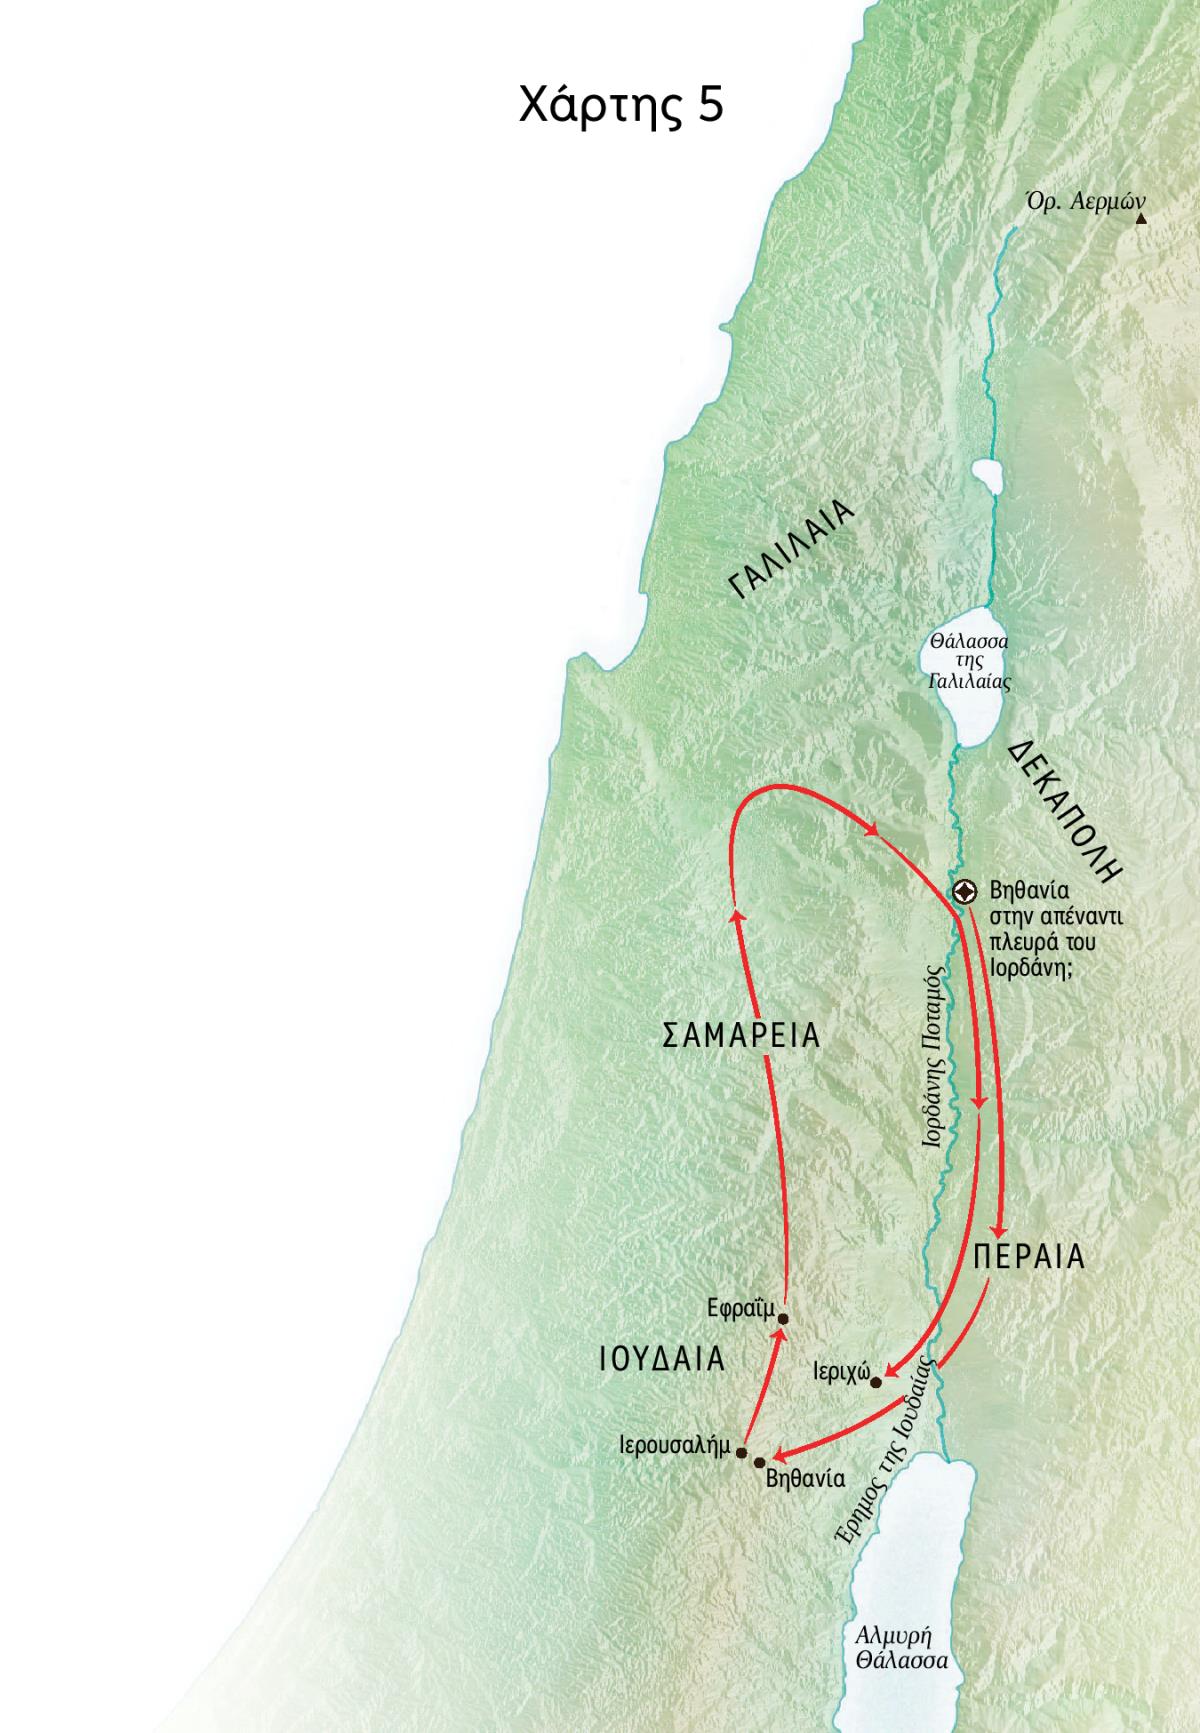 Χάρτης με τοποθεσίες που σχετίζονται με τη διακονία του Ιησού—περιλαμβάνει τη Βηθανία, την Ιεριχώ και την Περαία